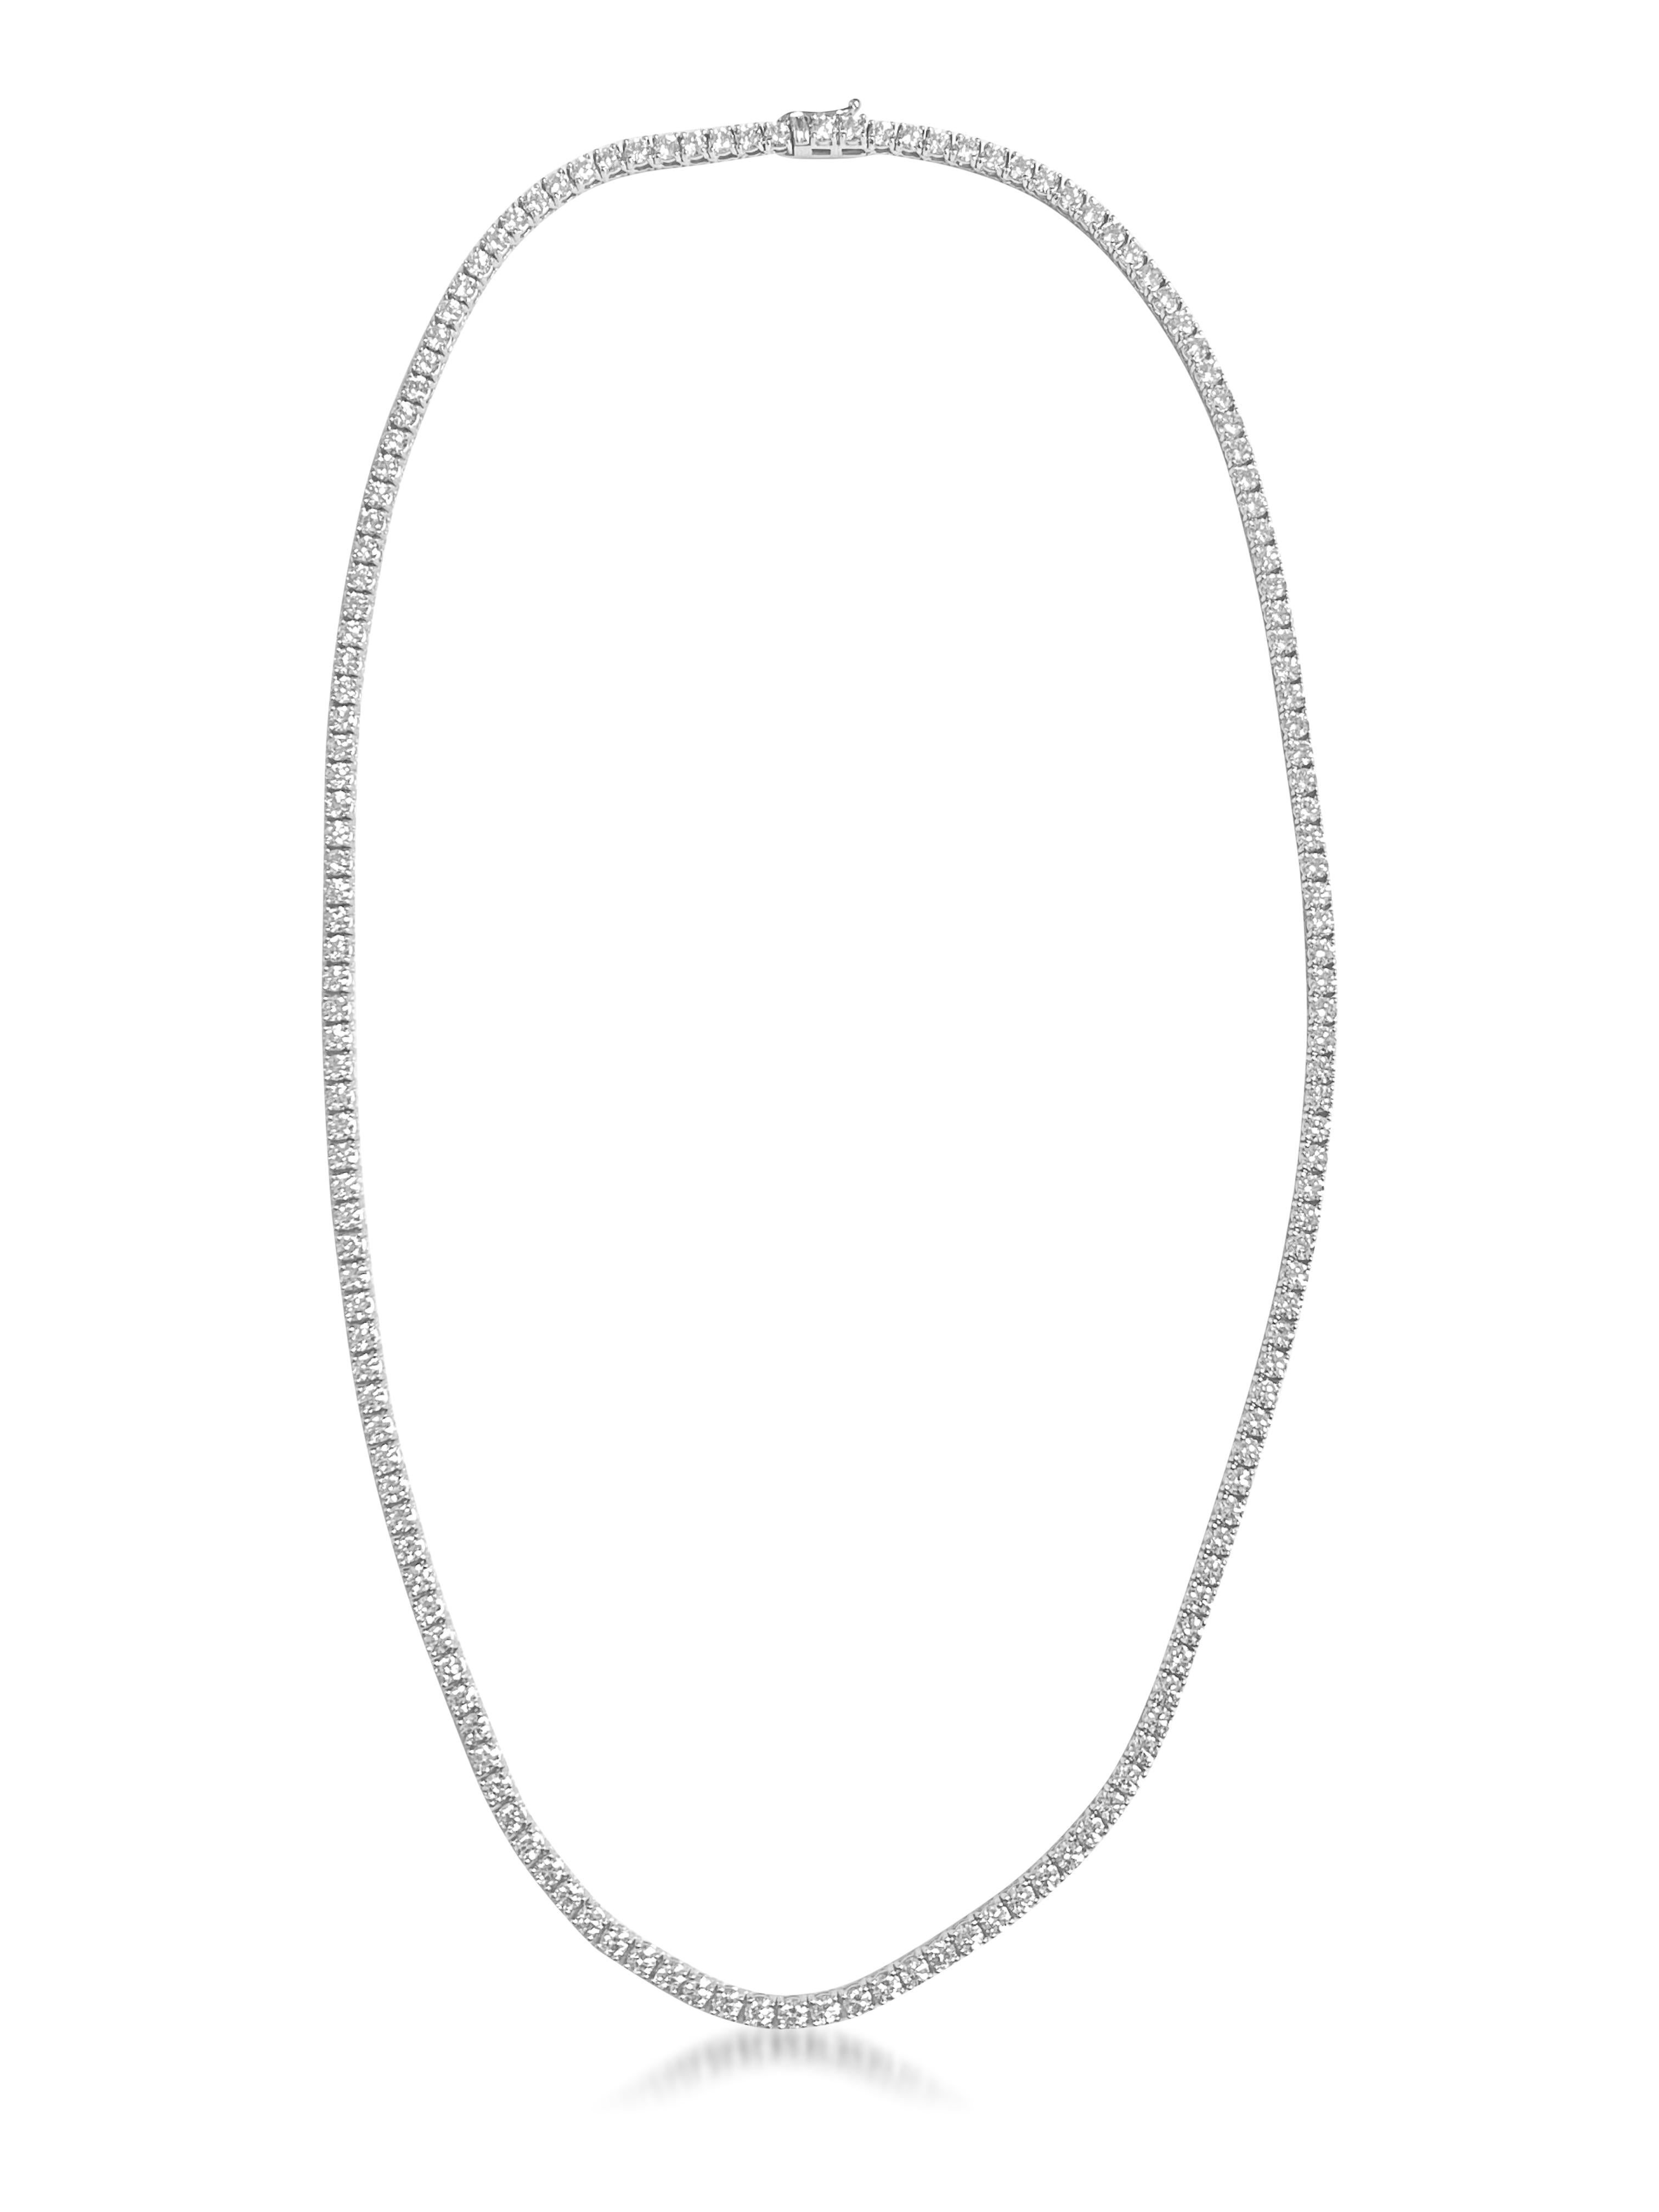 Brilliant Cut 16ct VVS Diamond Tennis Necklace For Sale